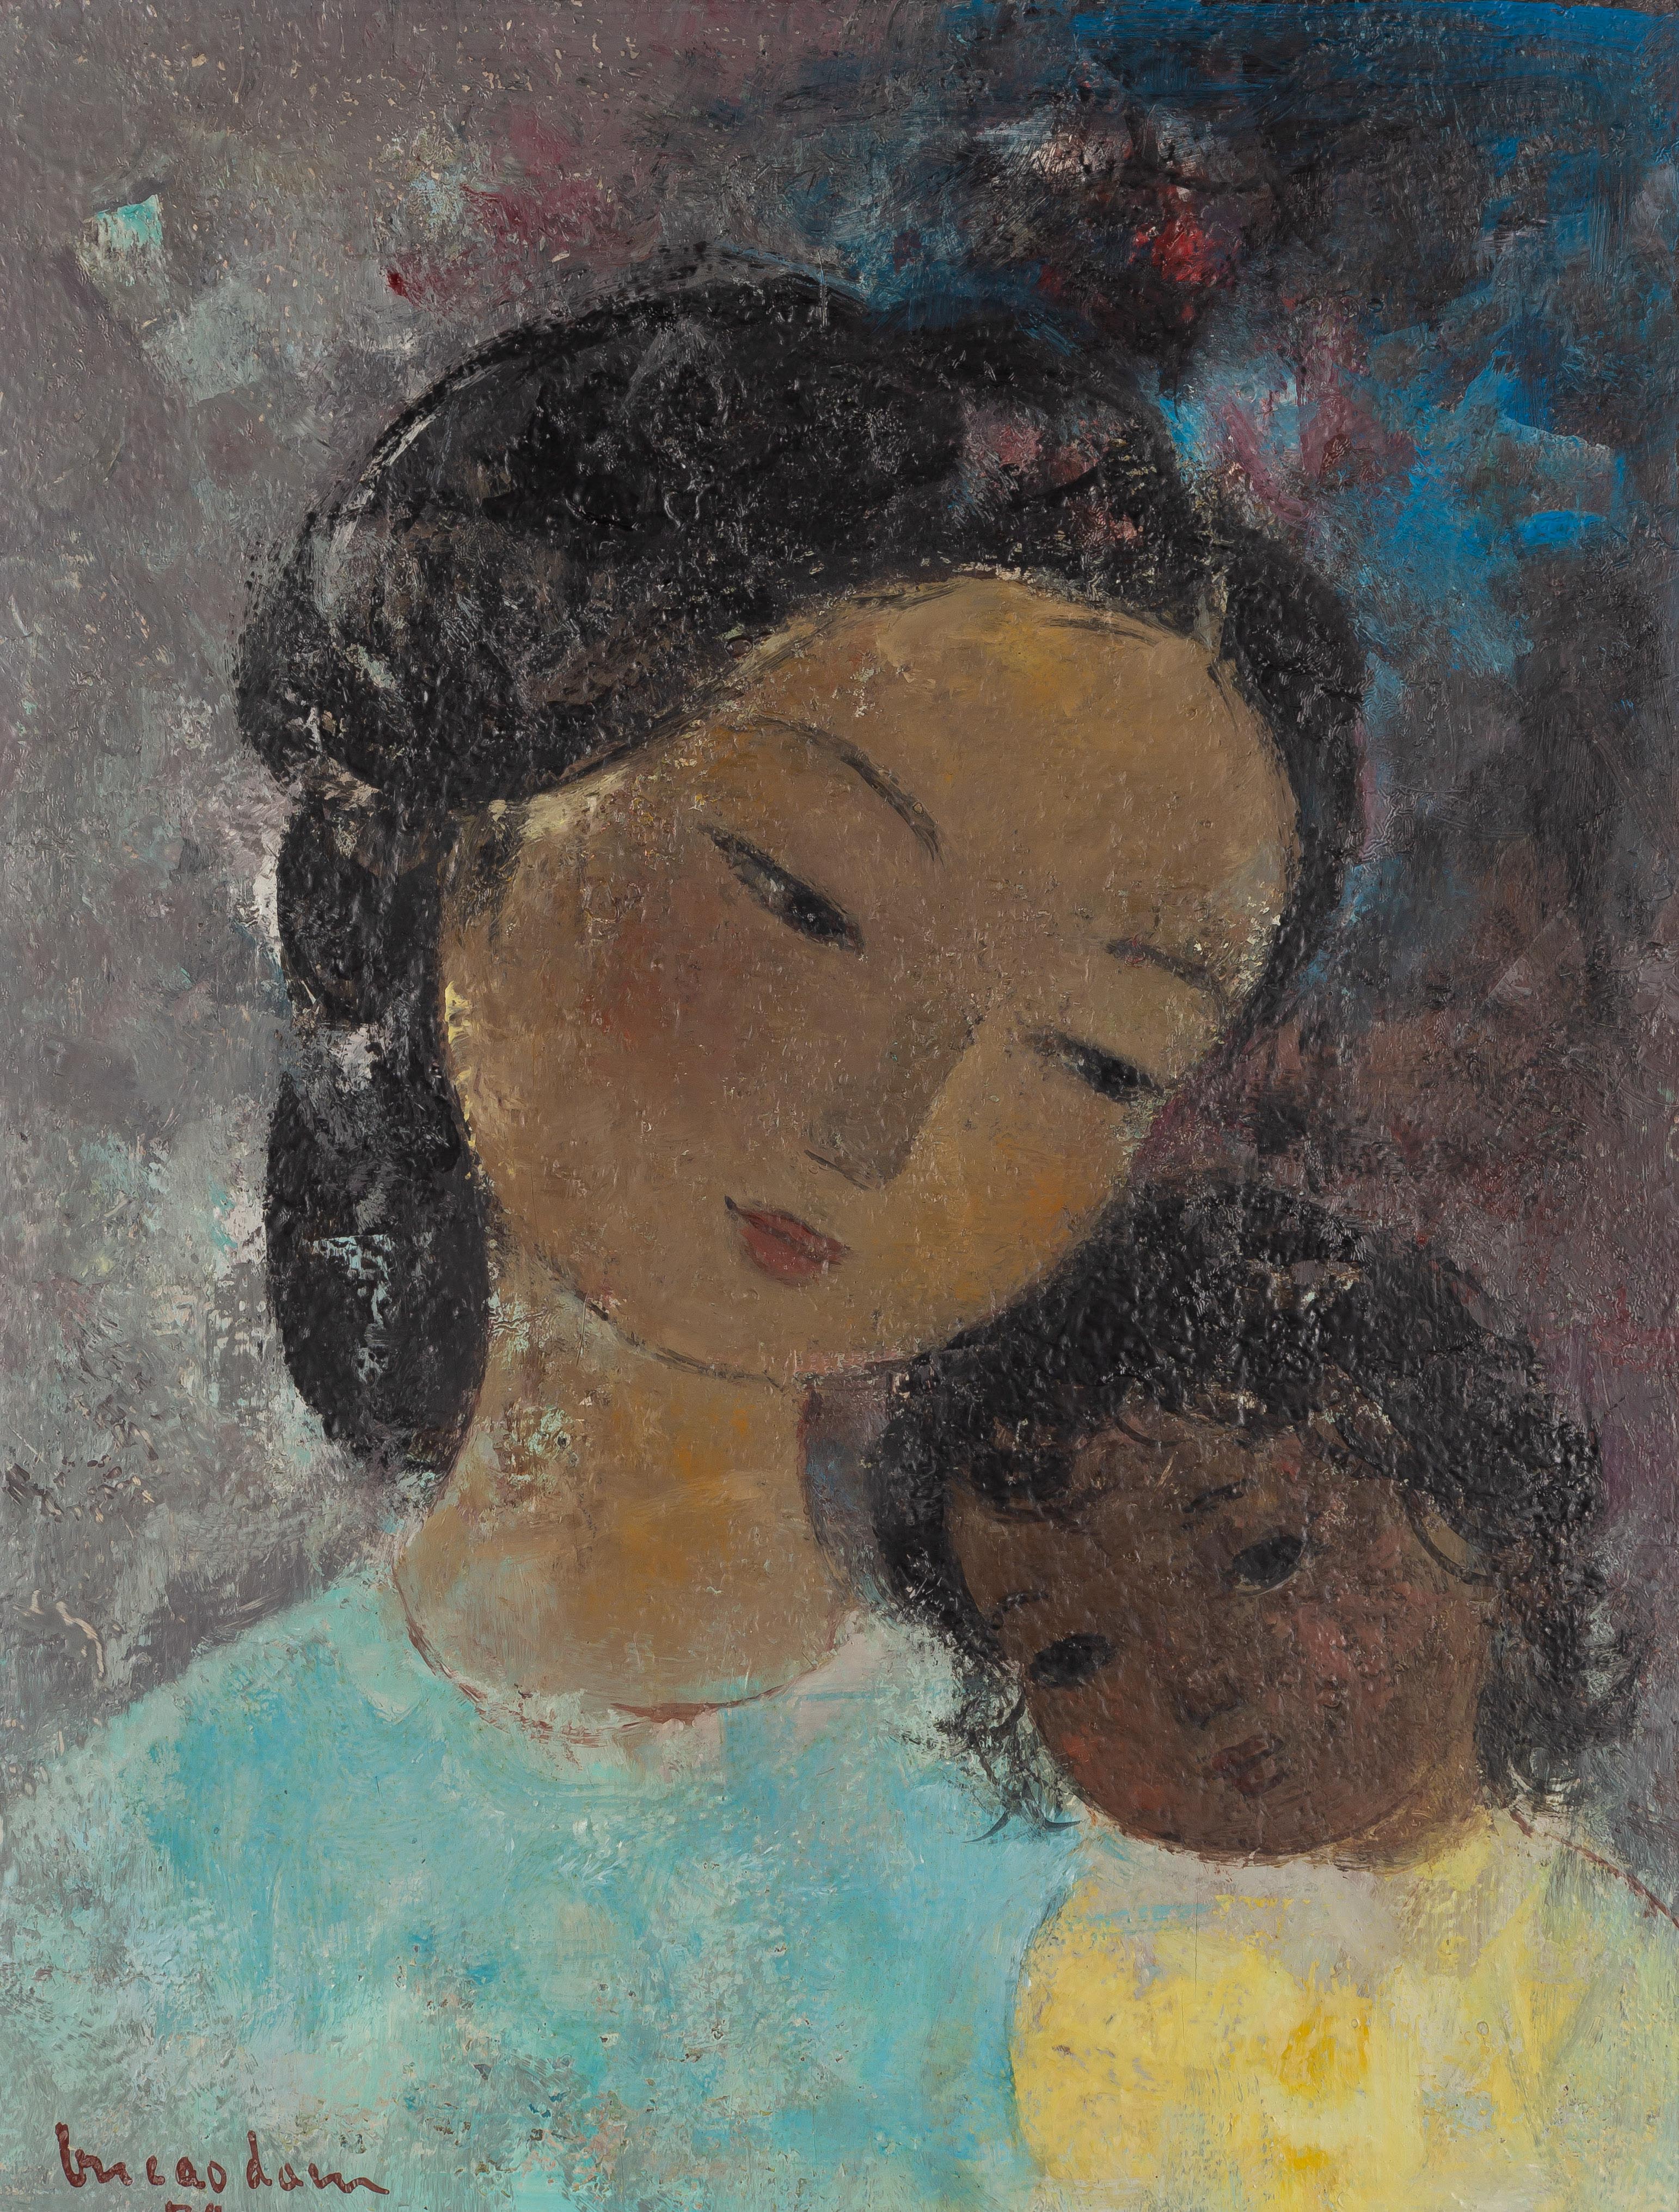 VU CAO DAM (VIETNAMESE, 1908-2000)